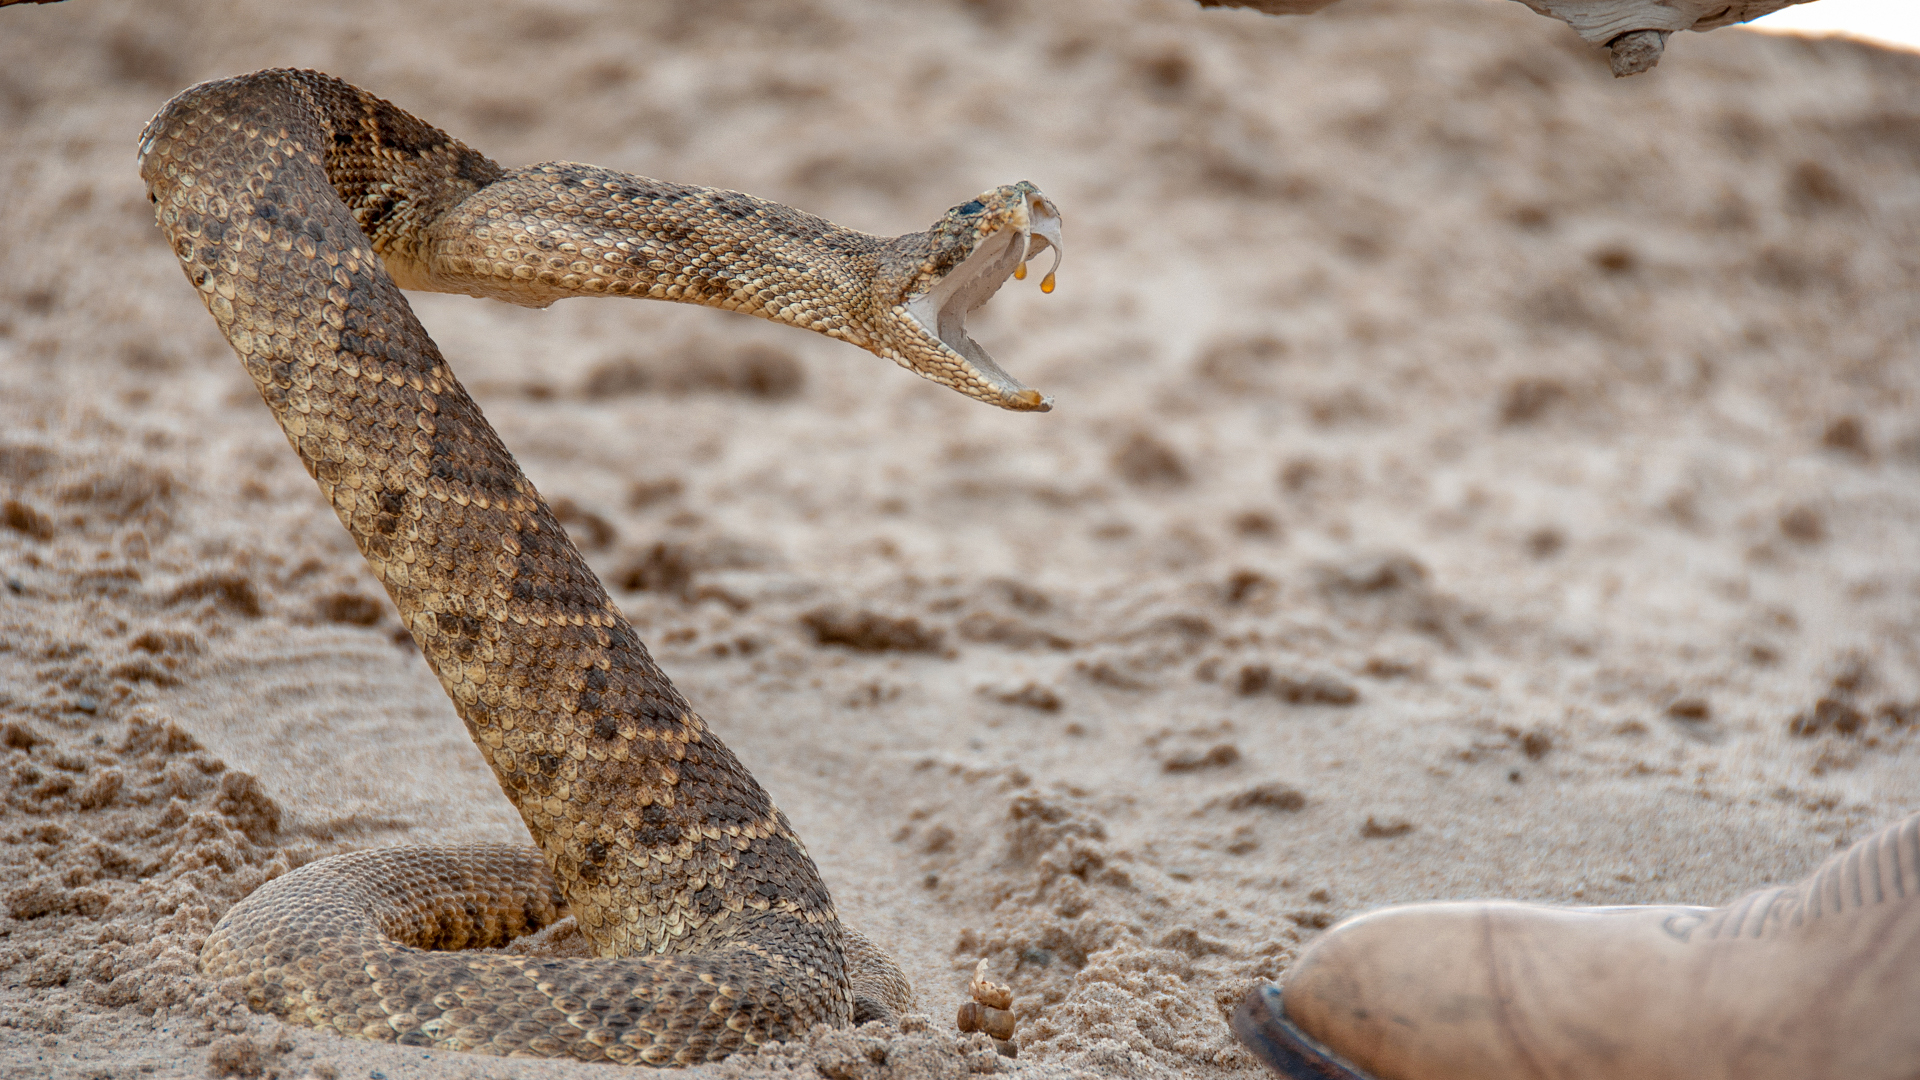 Una serpiente de cascabel en la arena por una bota de cuero